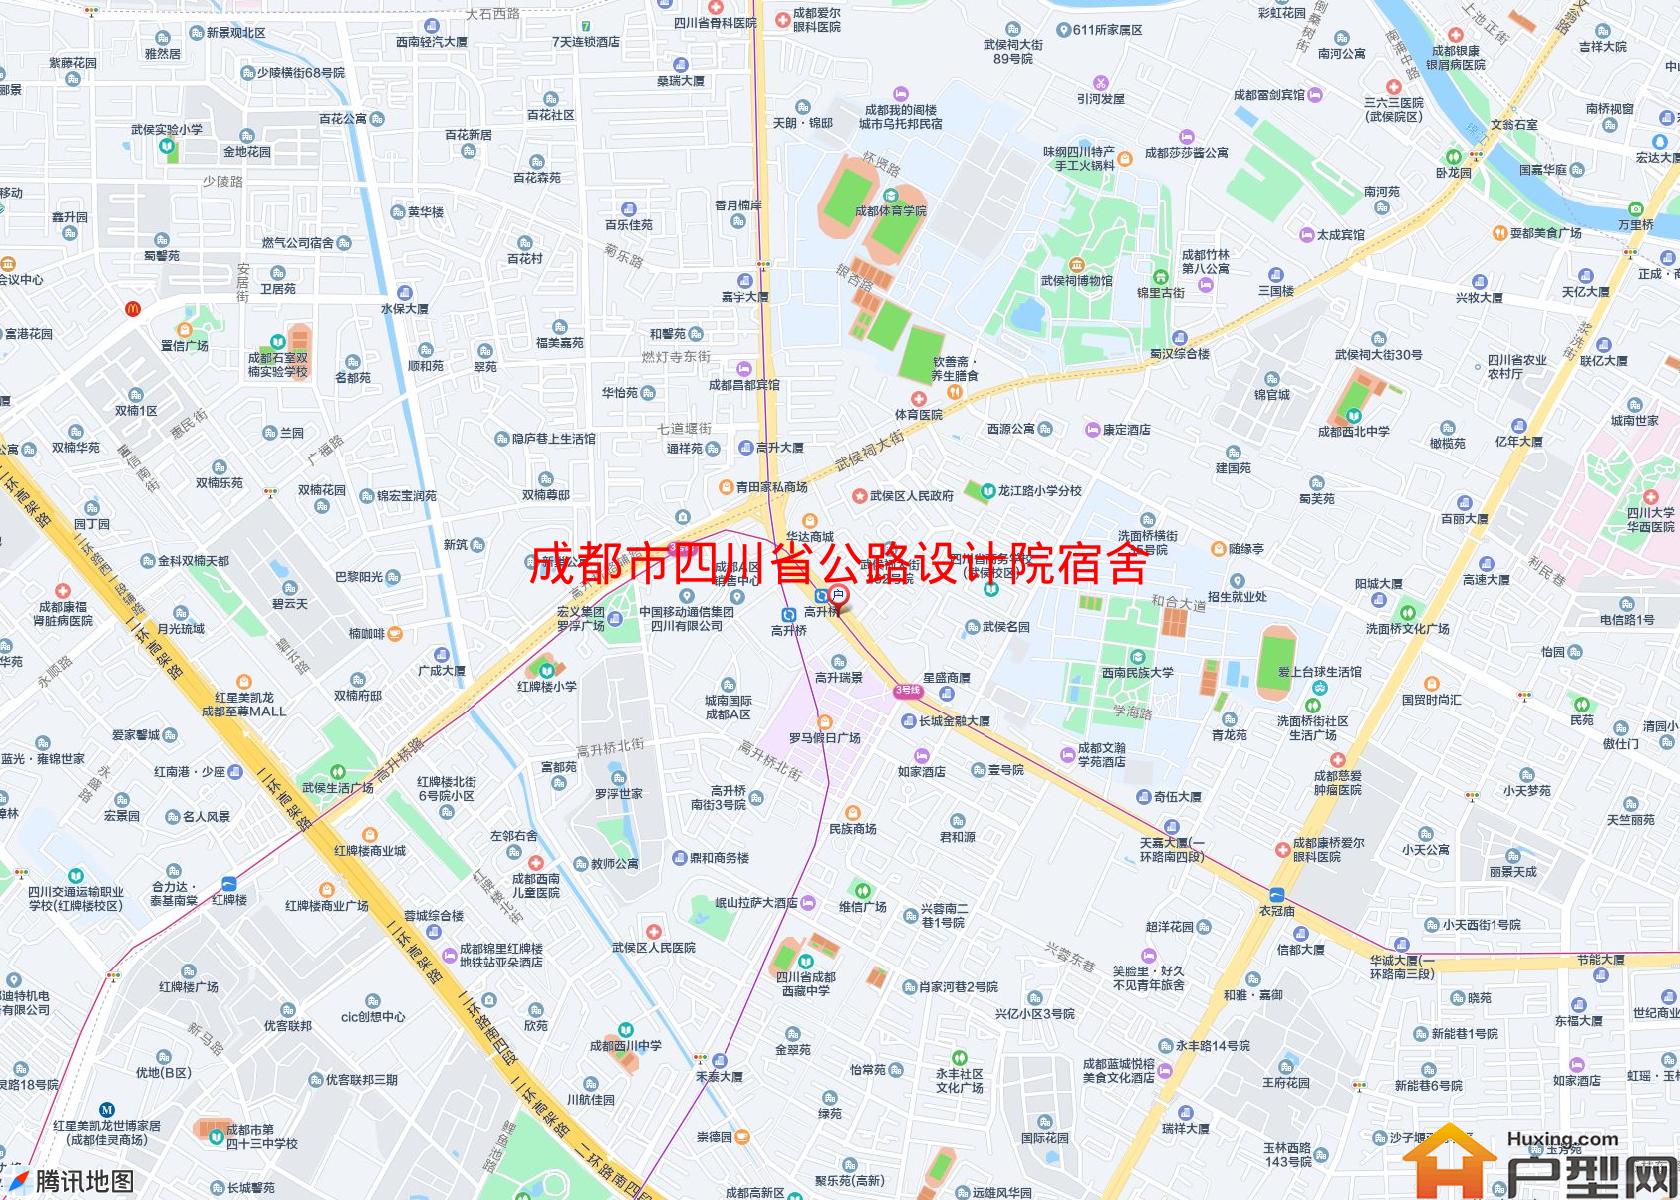 四川省公路设计院宿舍小区 - 户型网